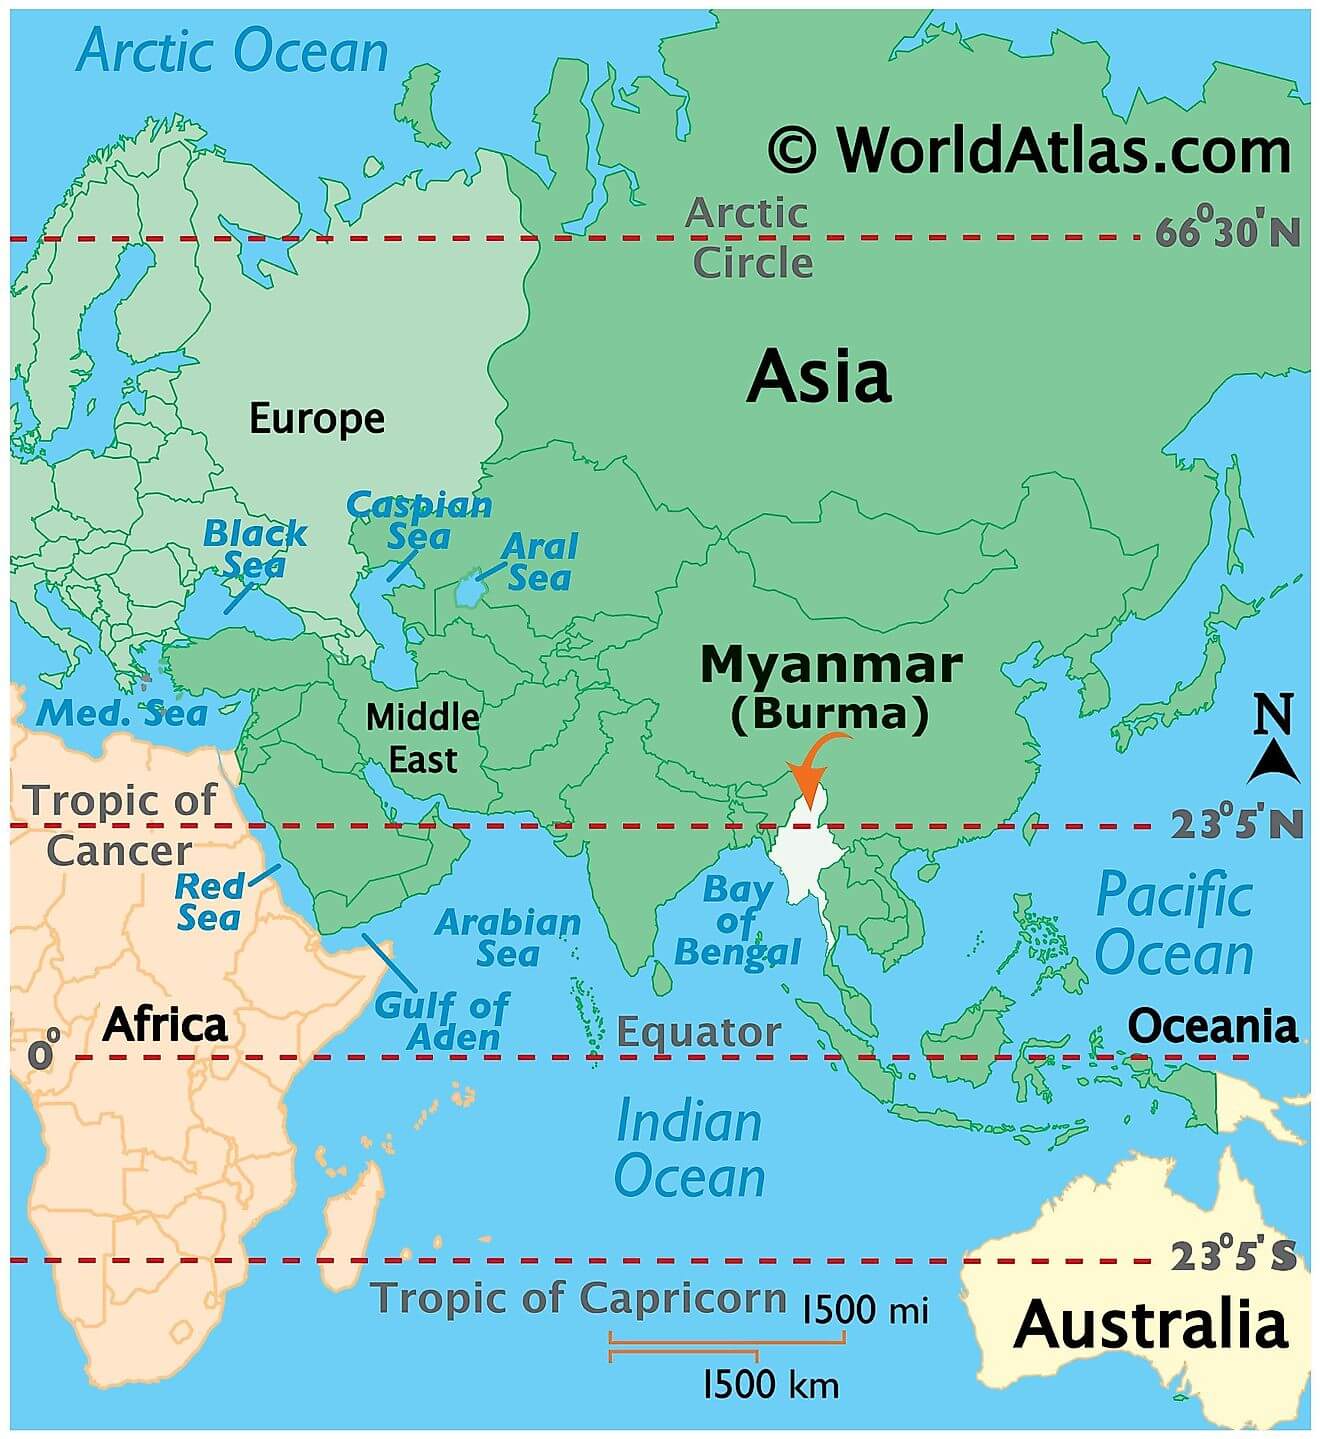 Mianma ở đâu?